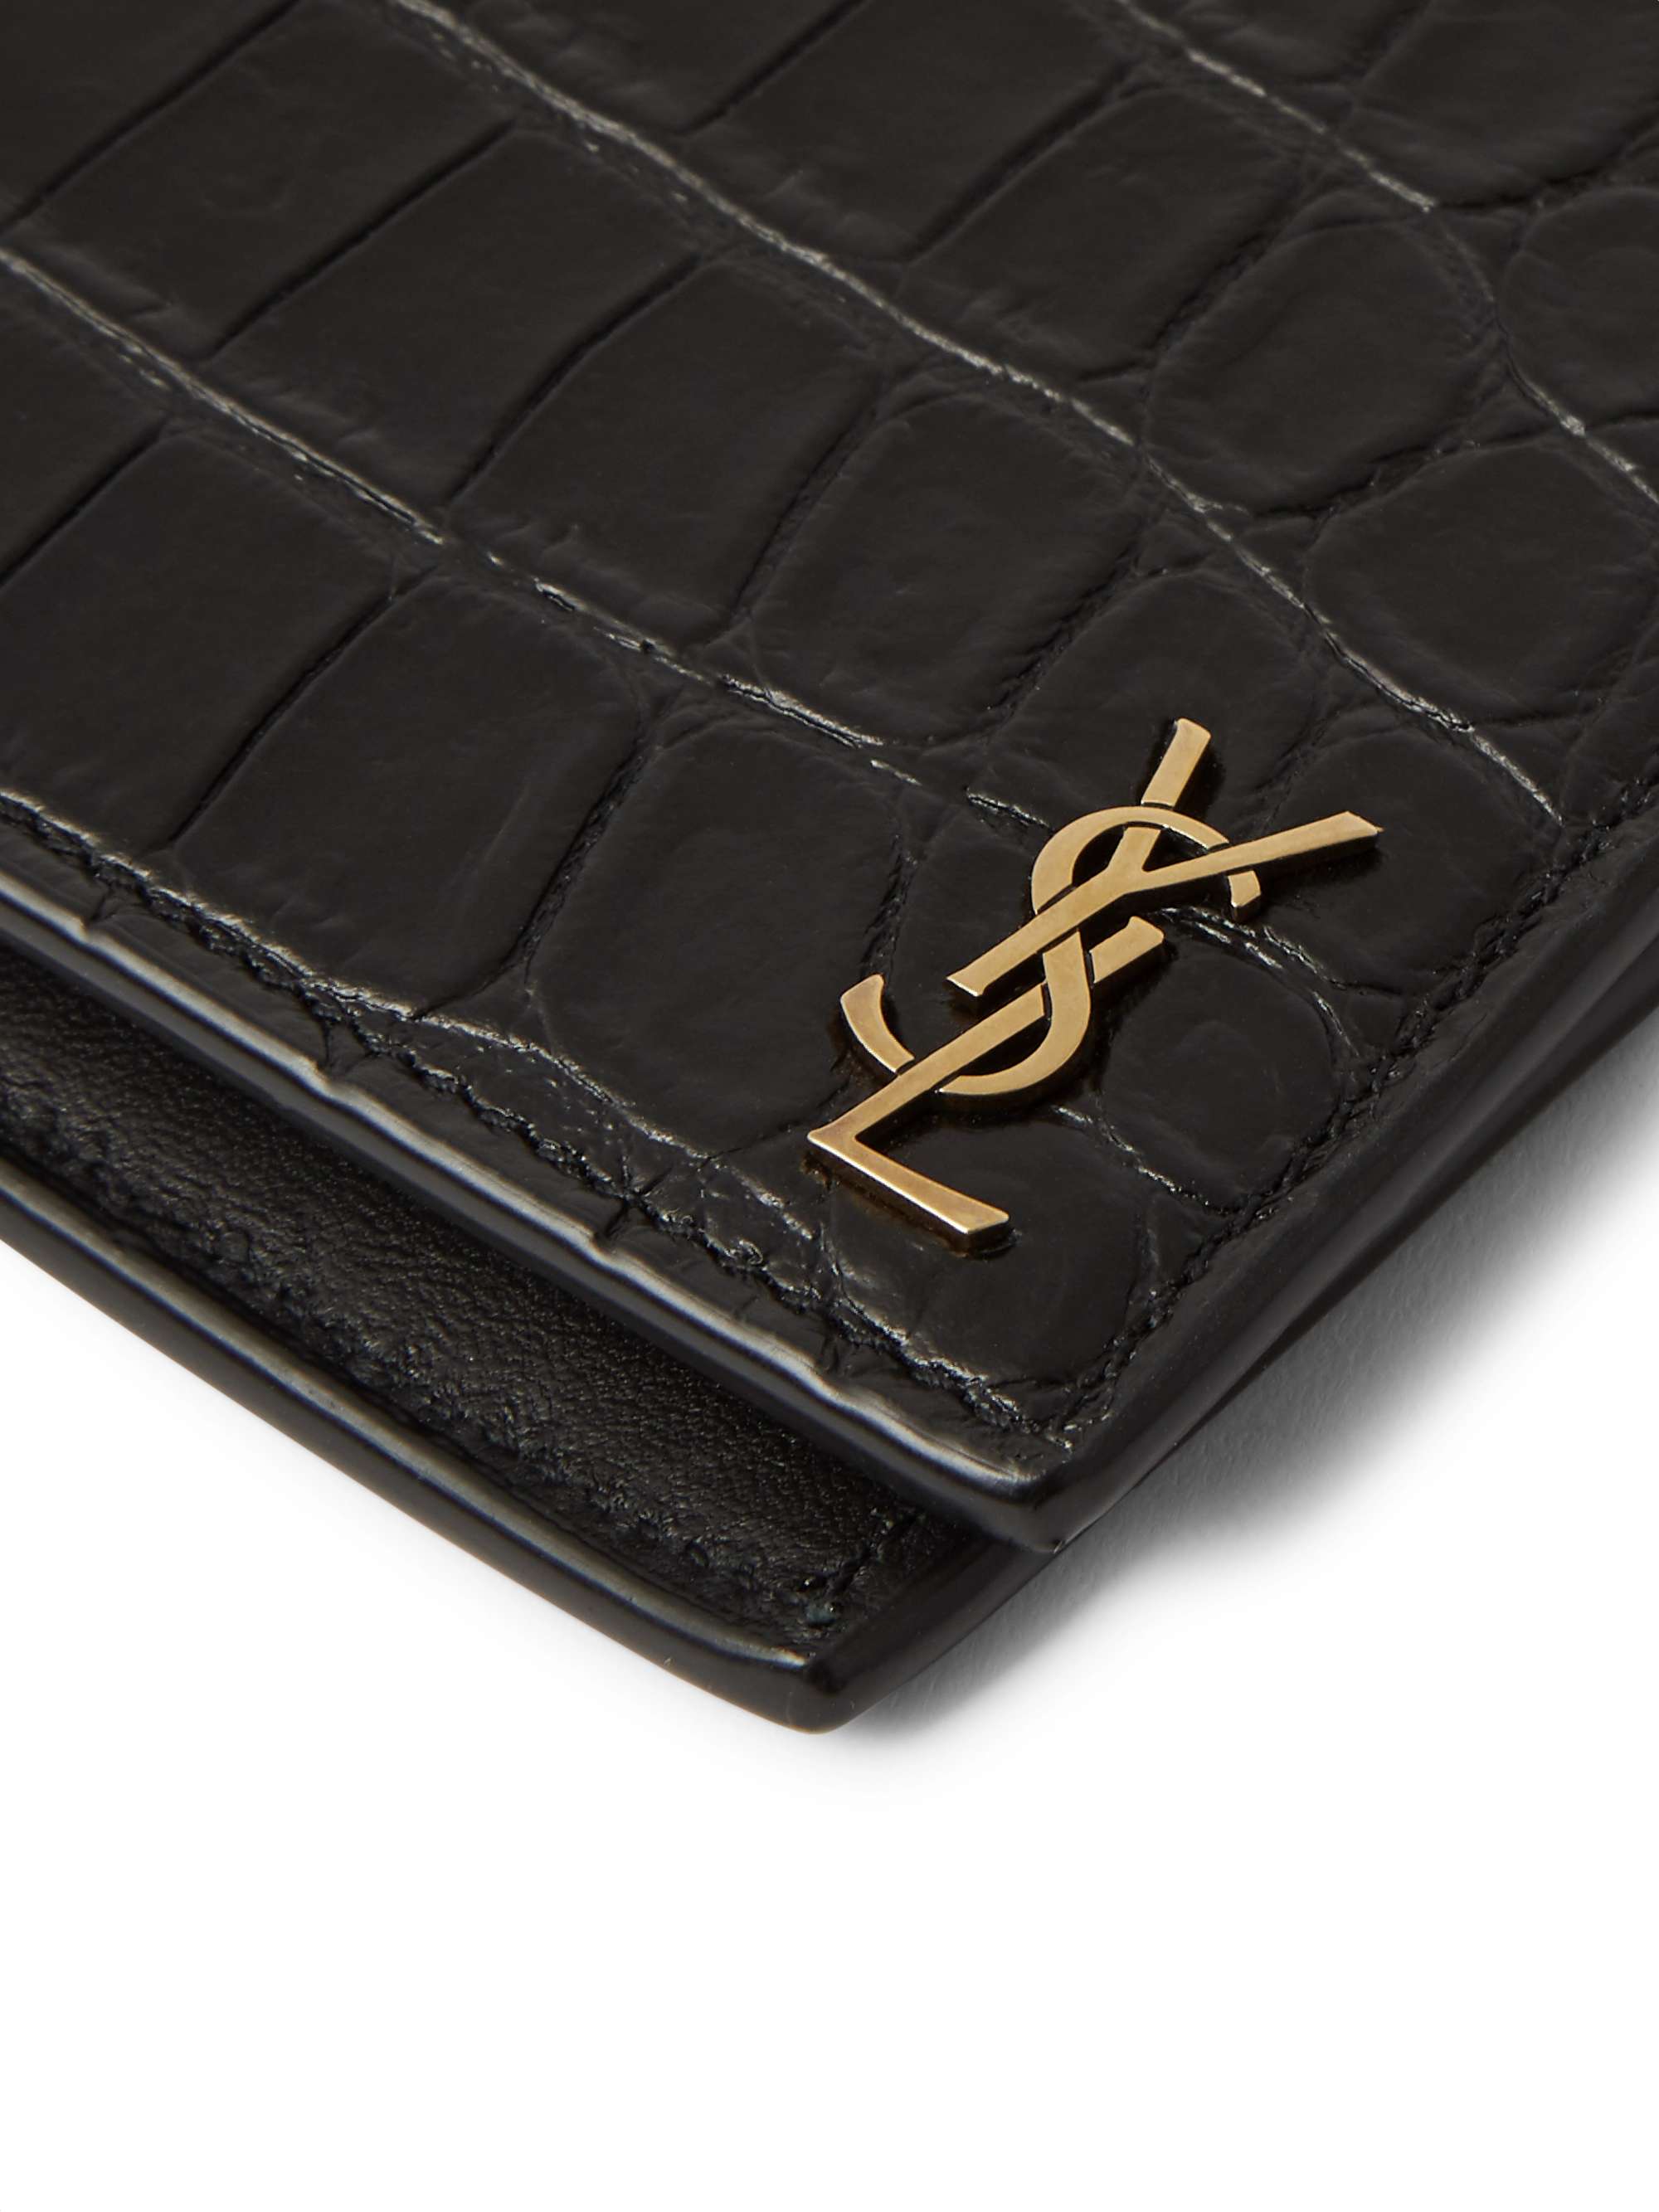 Saint Laurent Men's Croc-Embossed Monogram Leather Wallet